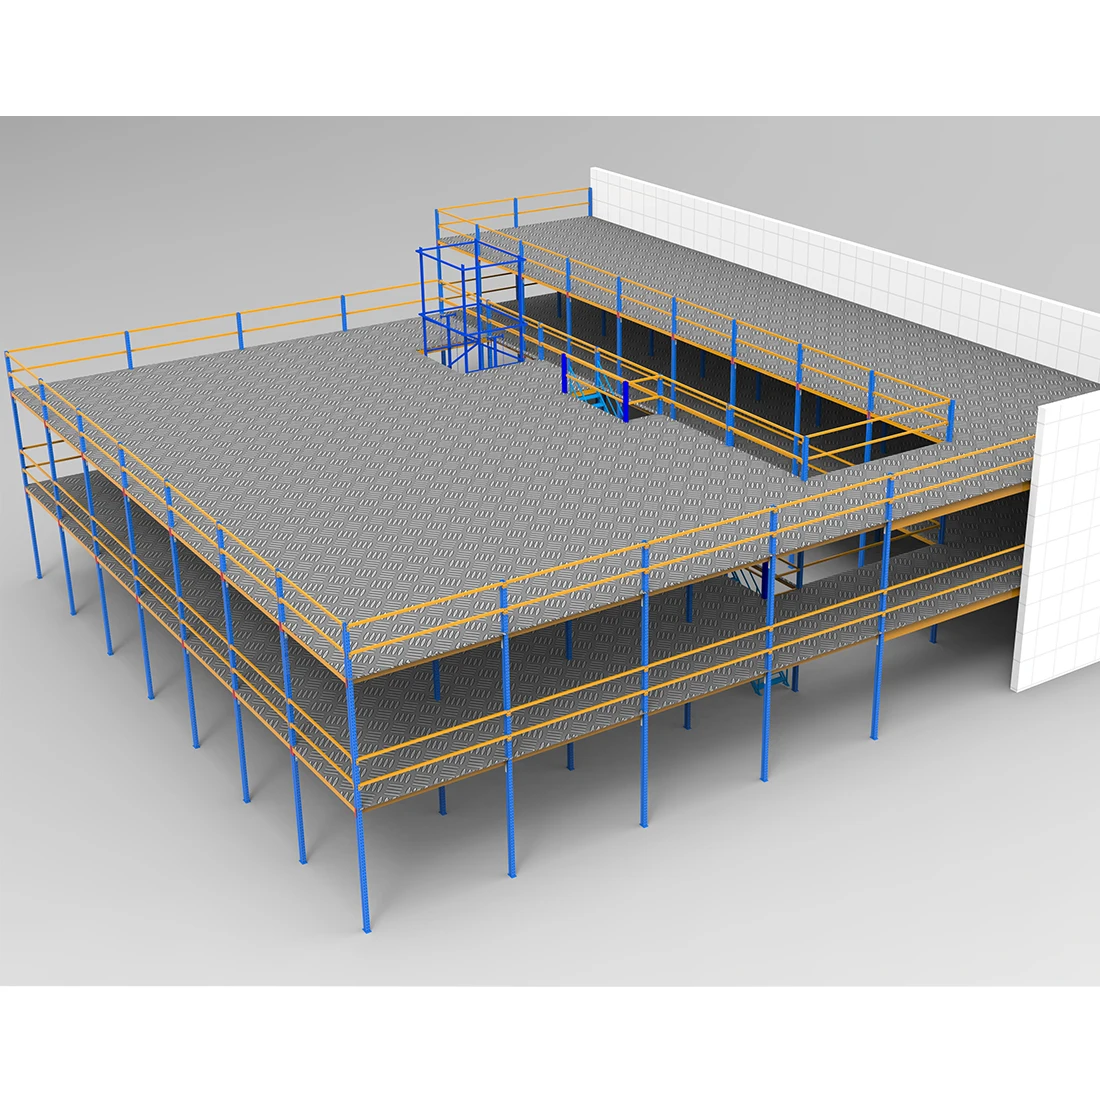 Werkseitig verstellbares, robustes Lagerregal, industrielle Stahlbodenplattformen, mehrstufiges Dachbodenregal, Mezzanine-Lagerregal